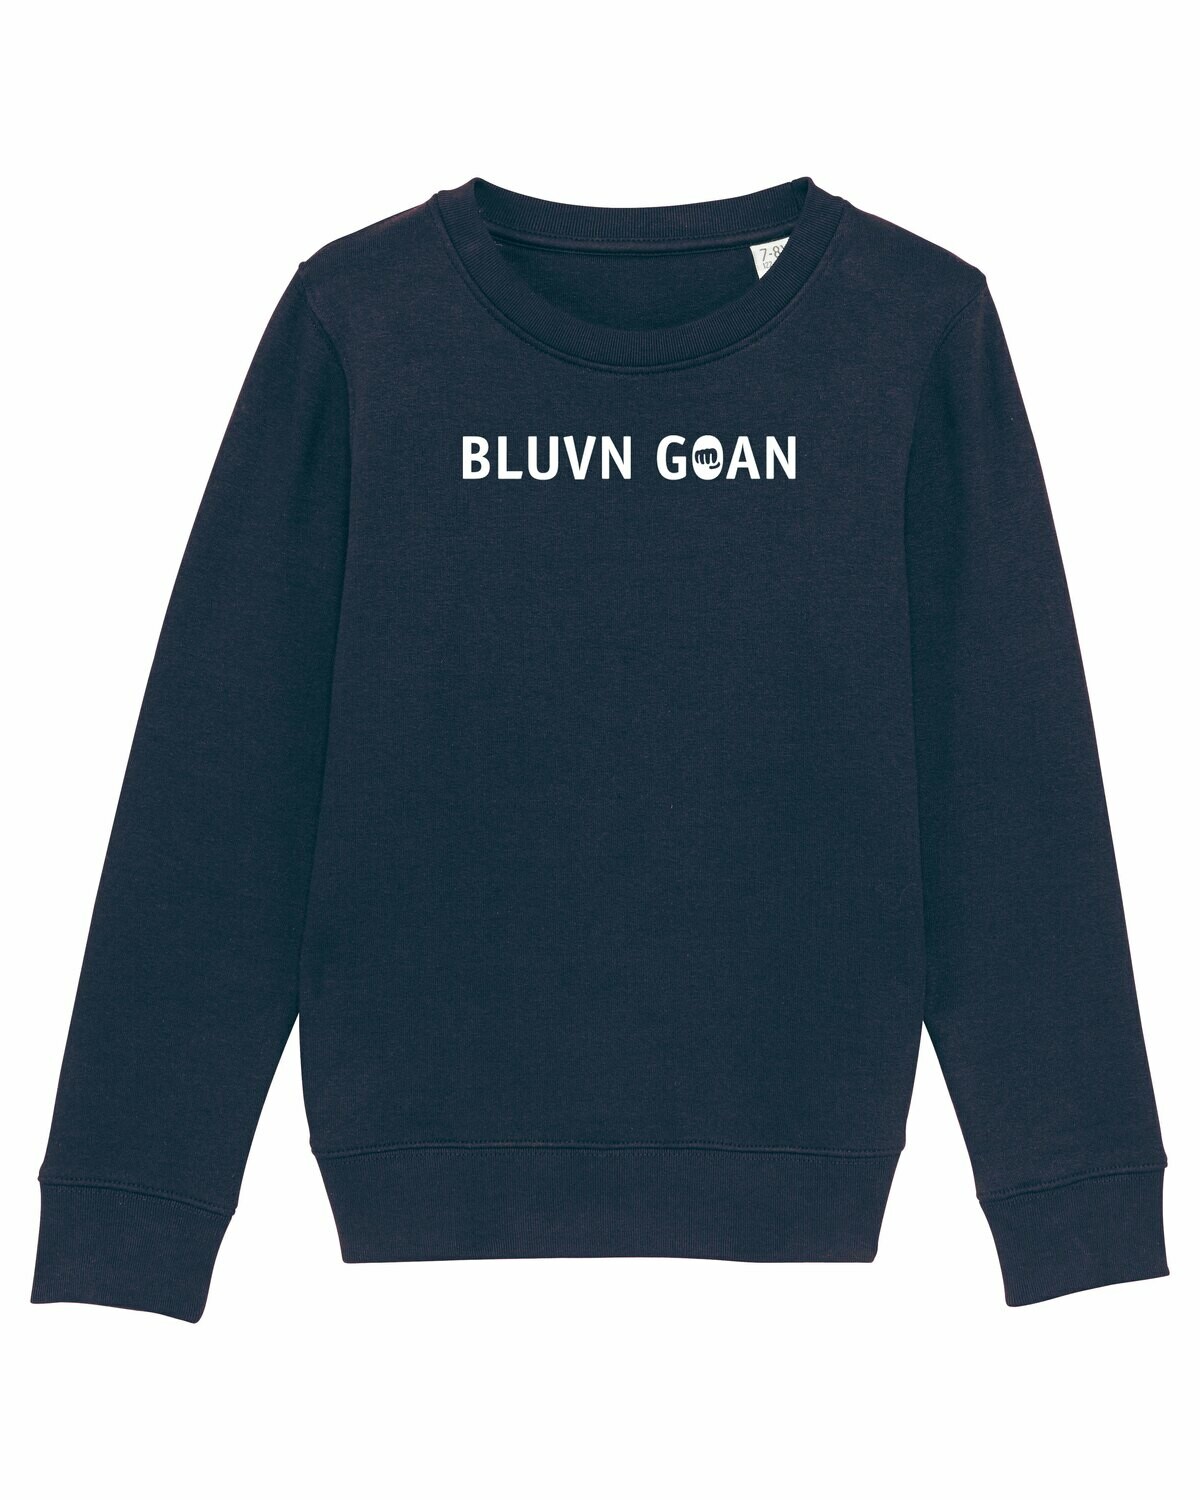 Kids Sweater Bluvn goan